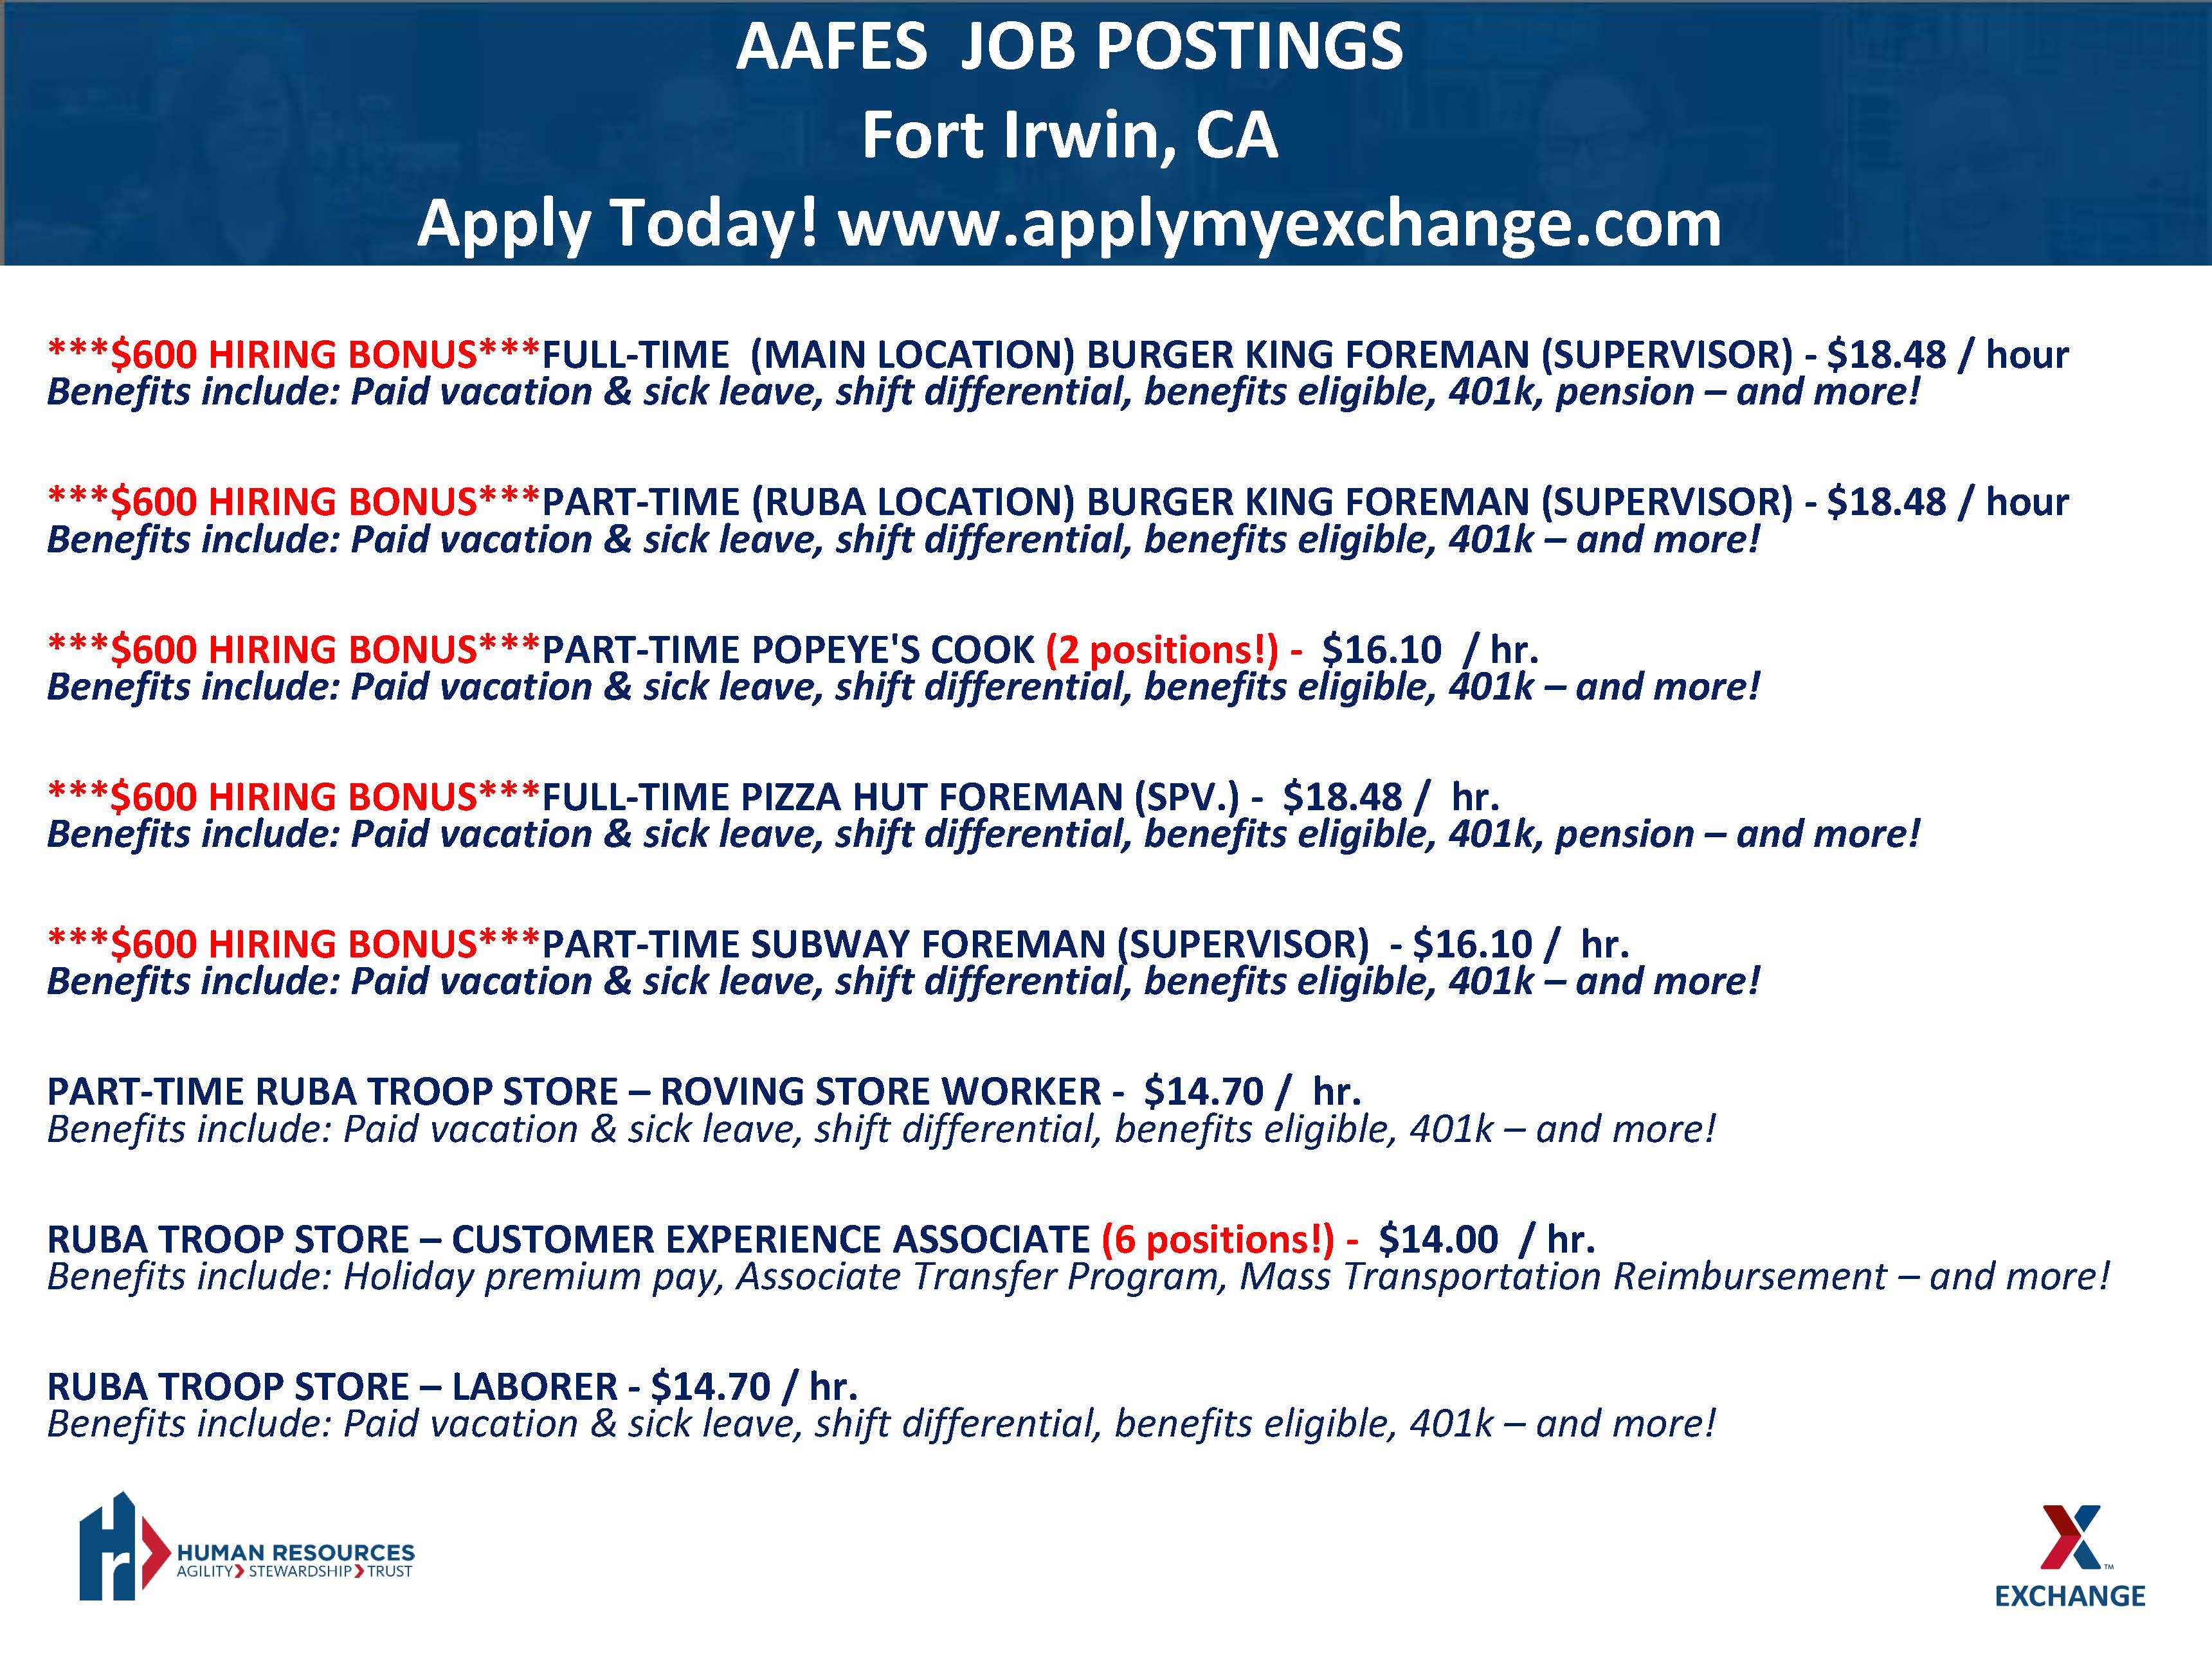 AAFES Hot Jobs